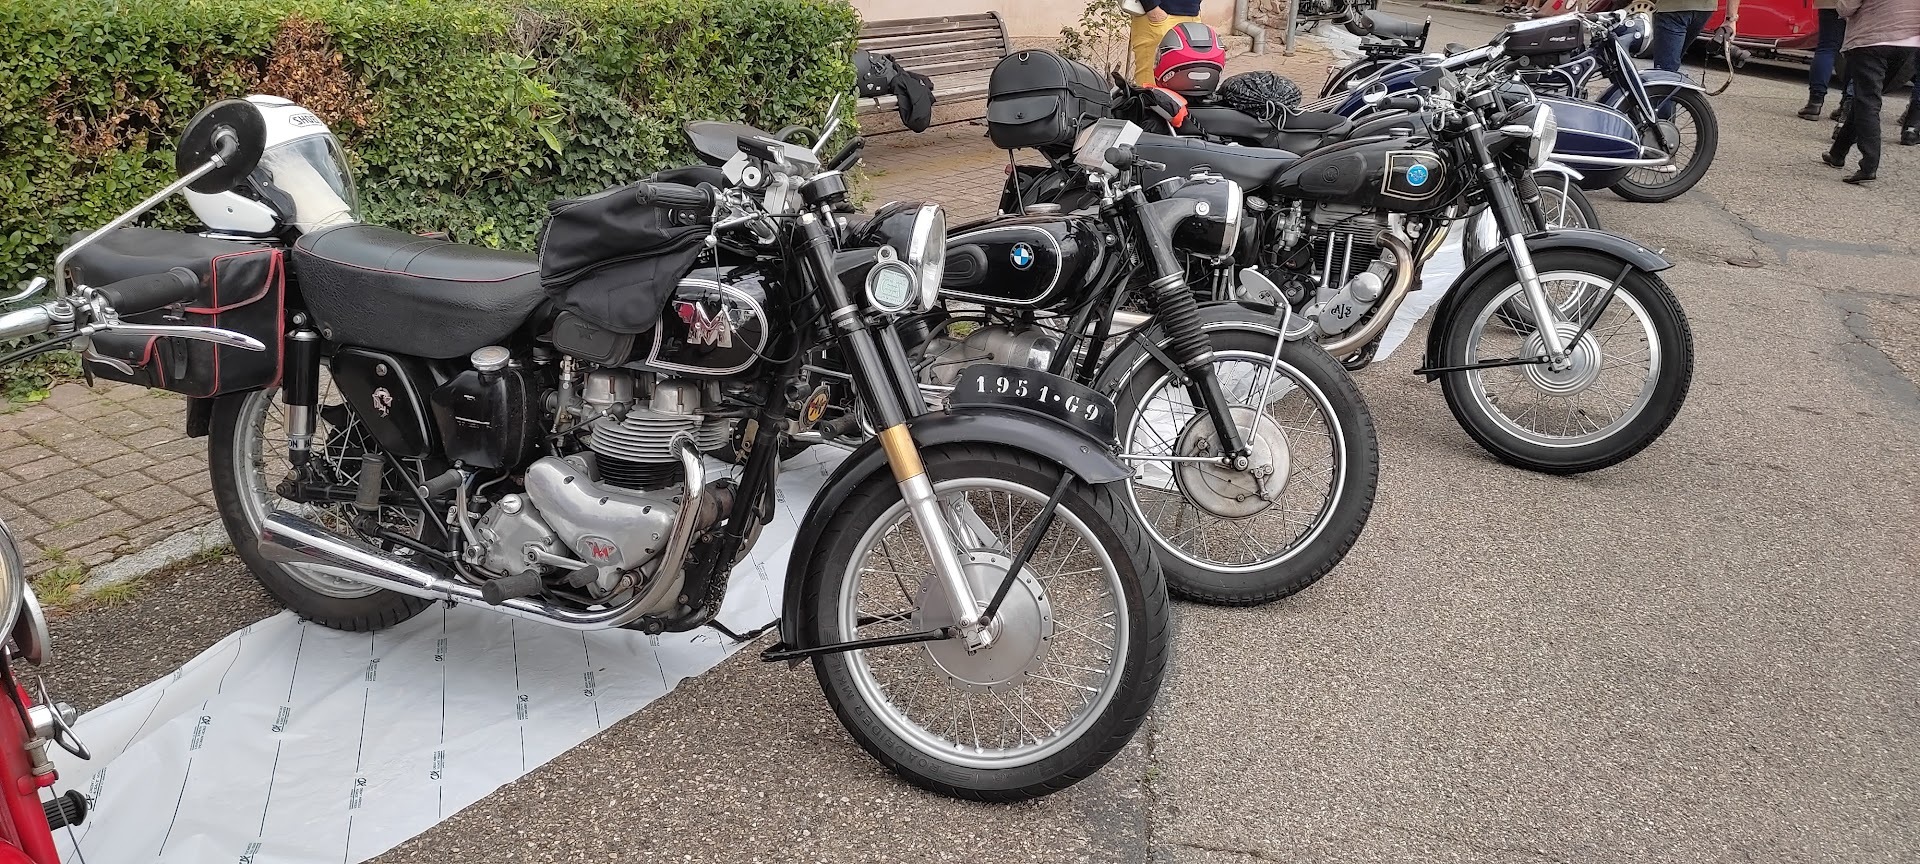 tour de france motos anciennes  Qw9n